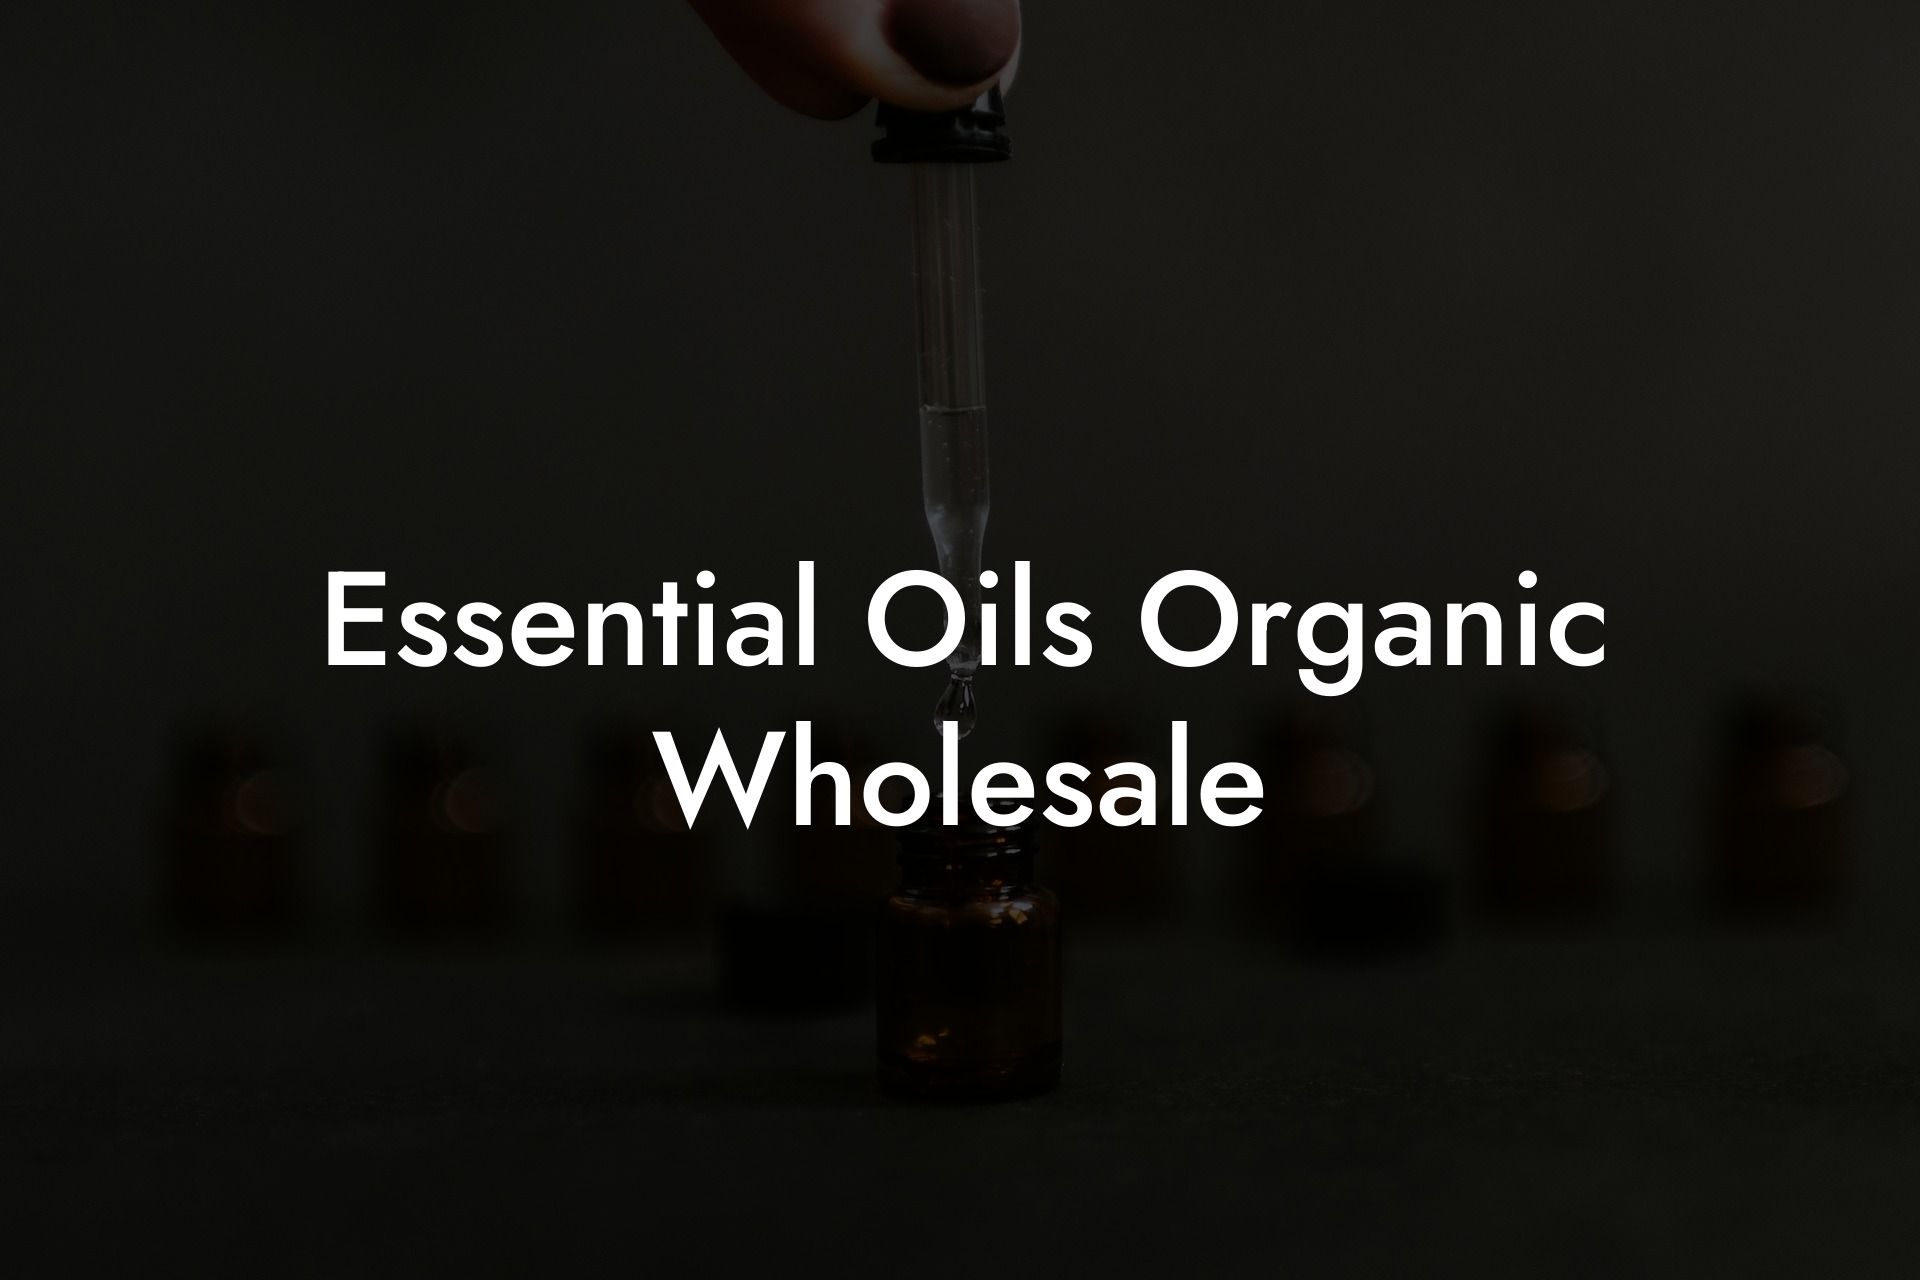 Essential Oils Organic Wholesale